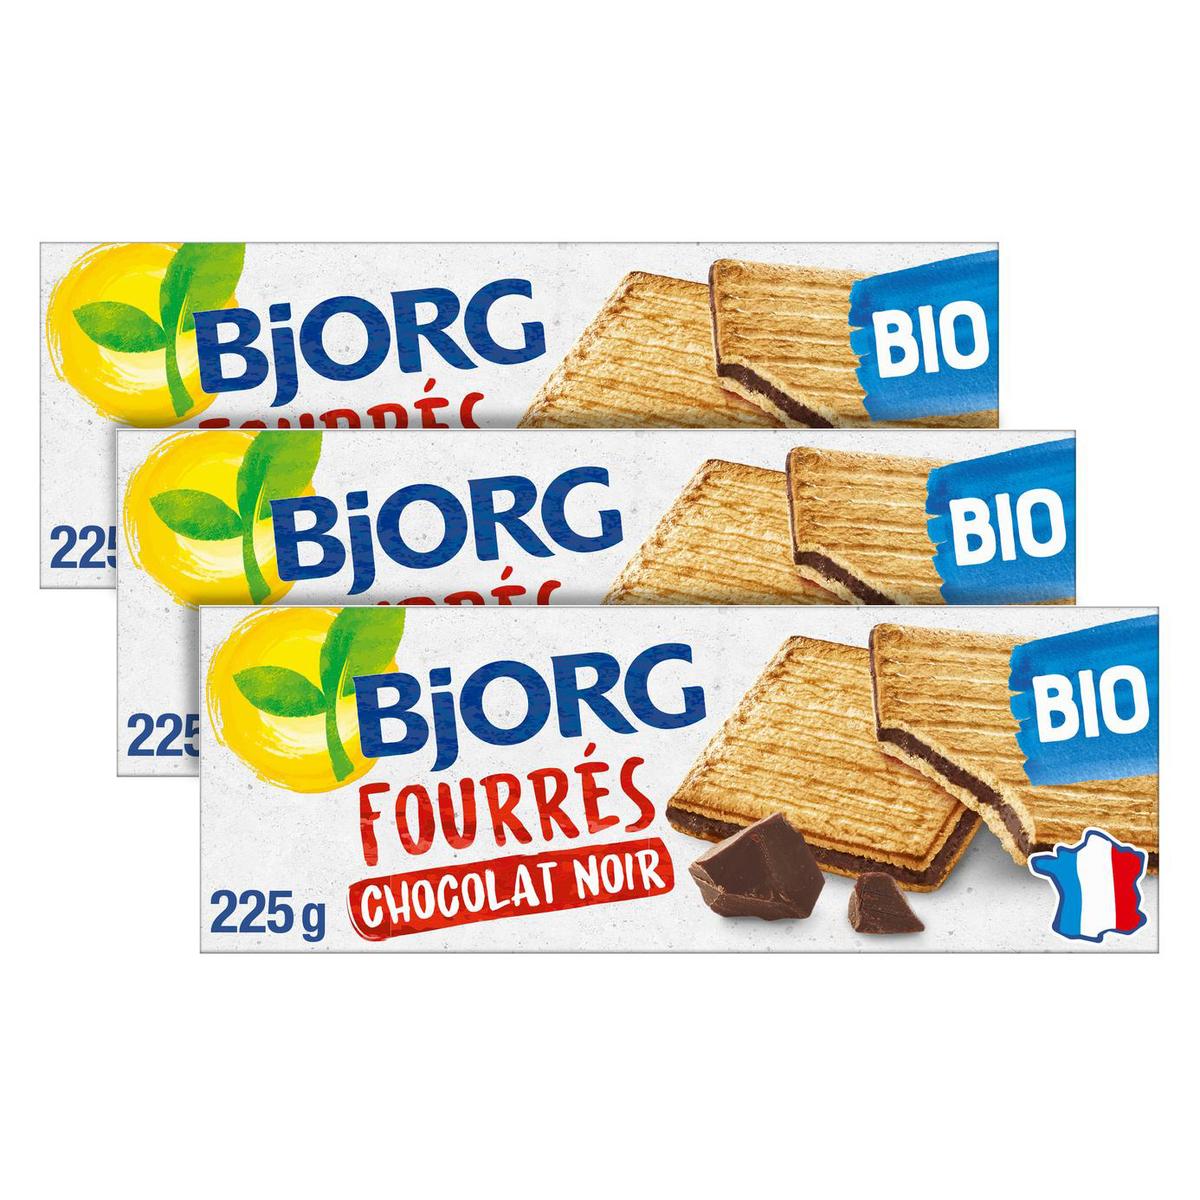 Achat / Vente Promotion Bjorg Biscuits blé sésame bio Nutri+, 184g